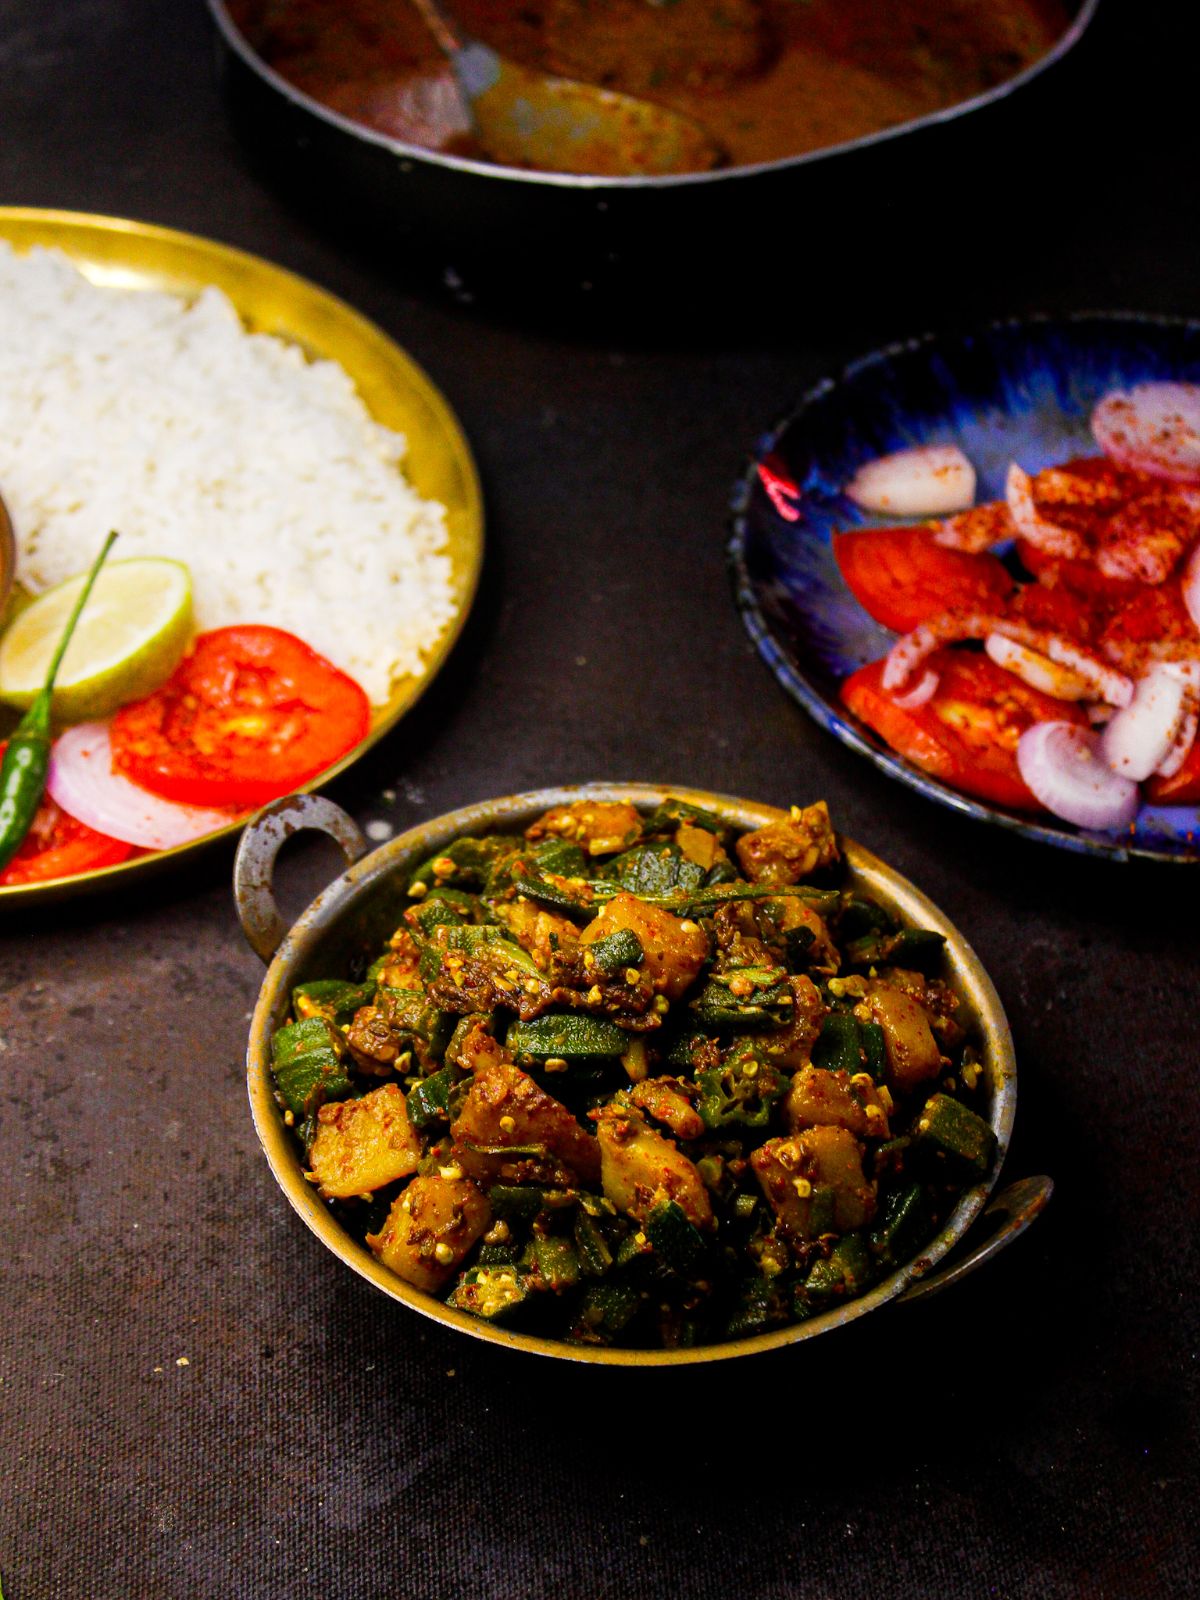 Aloo bhindi served in a wok